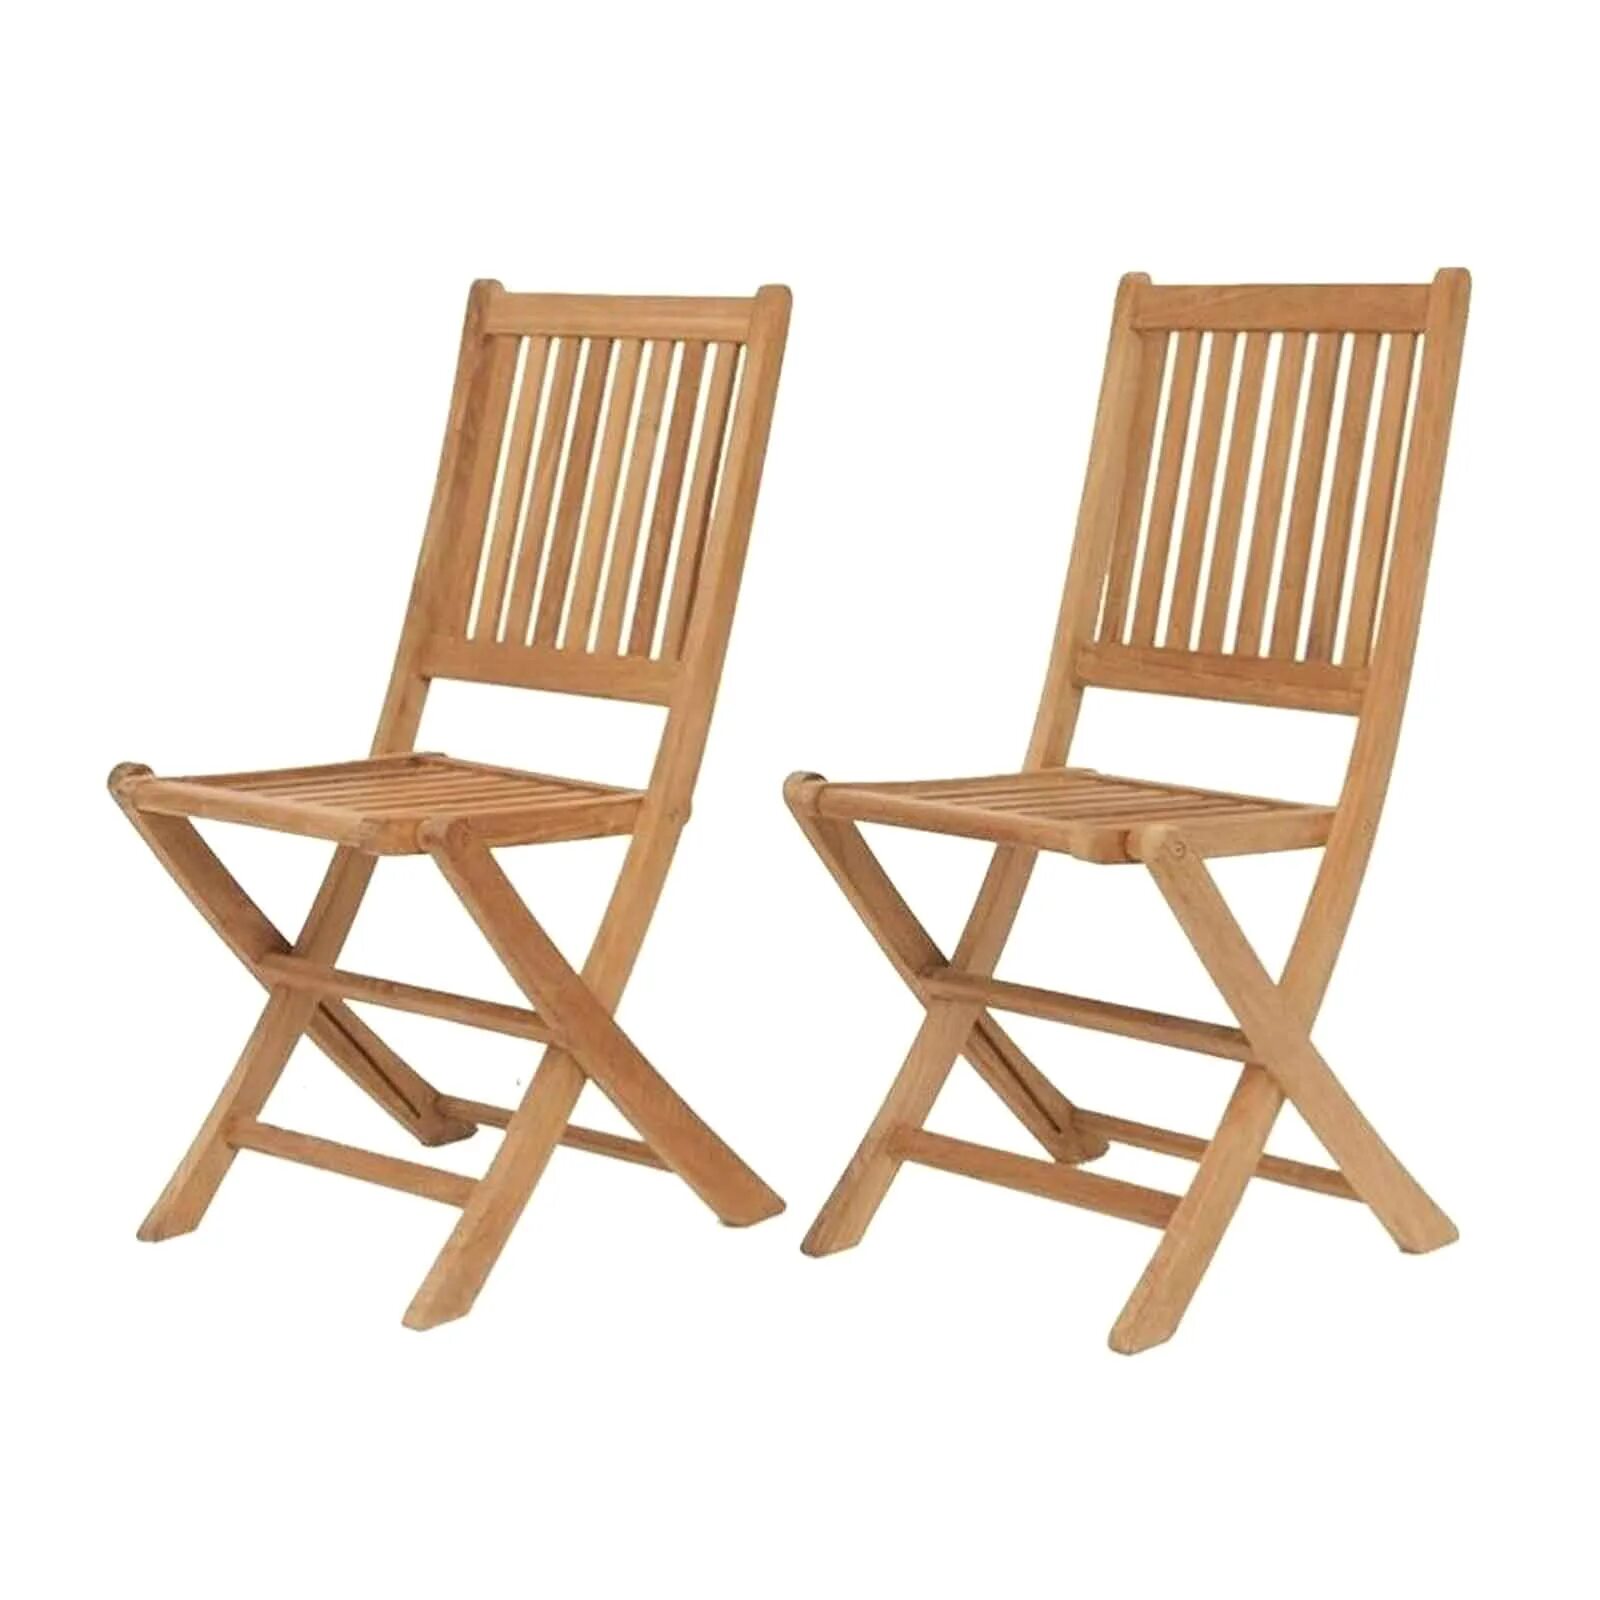 Складные кухонные стулья. Складной стул хофф. Стулья икеа складные деревянные. Стул икеа складной деревянный со спинкой. Стул складной икеа дерево.